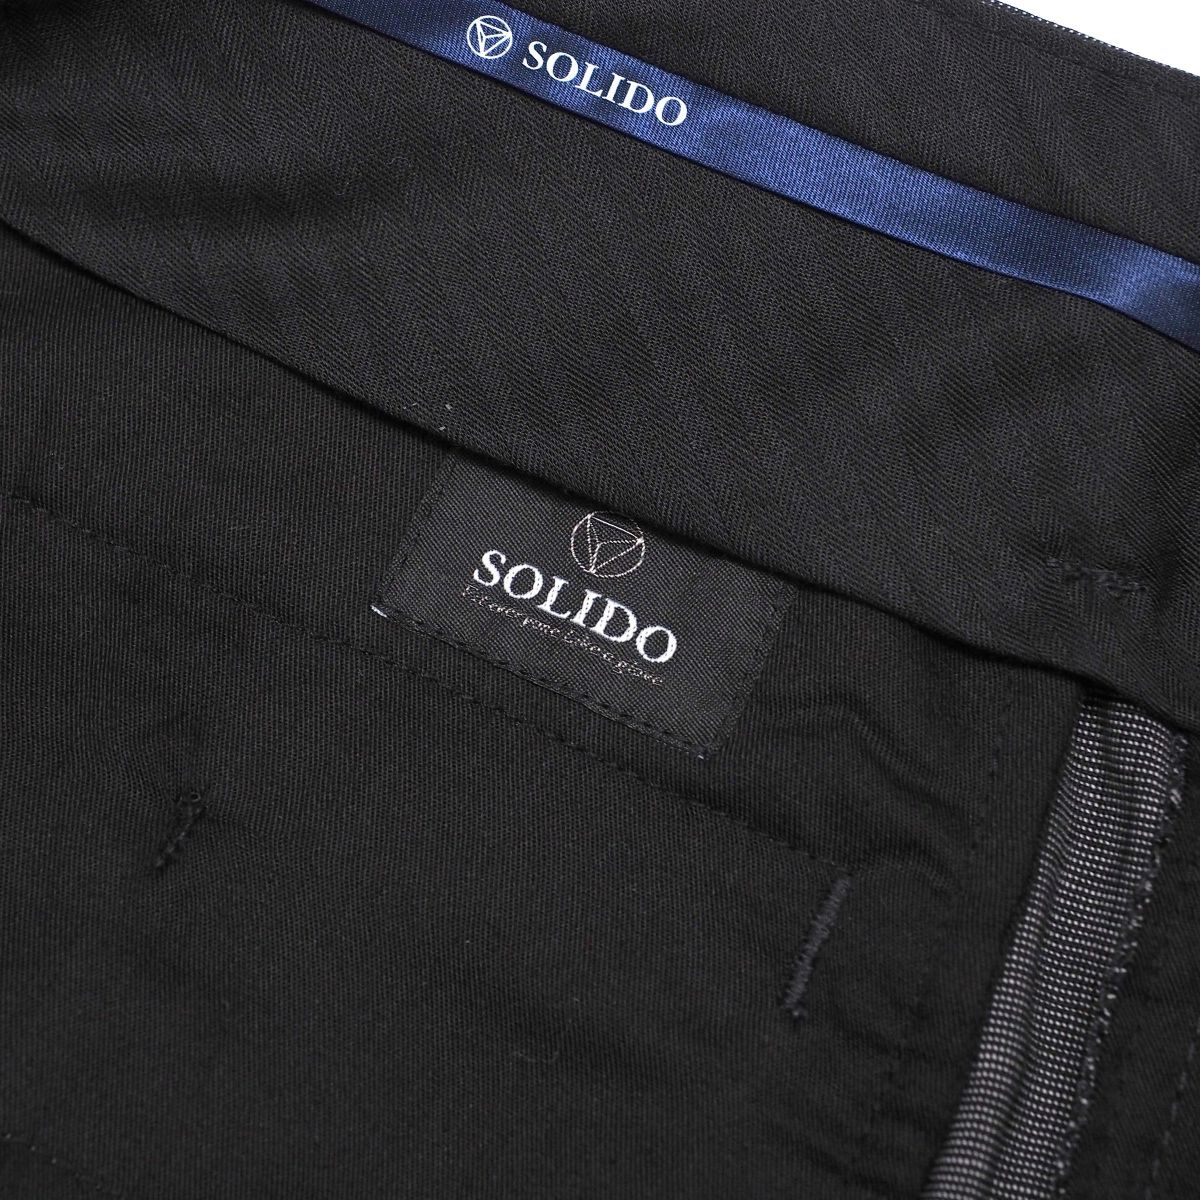 TH5303v обычная цена 3 десять тысяч иен SOLIDOso Lead мужской 01no- tuck длинные брюки слаксы серый 